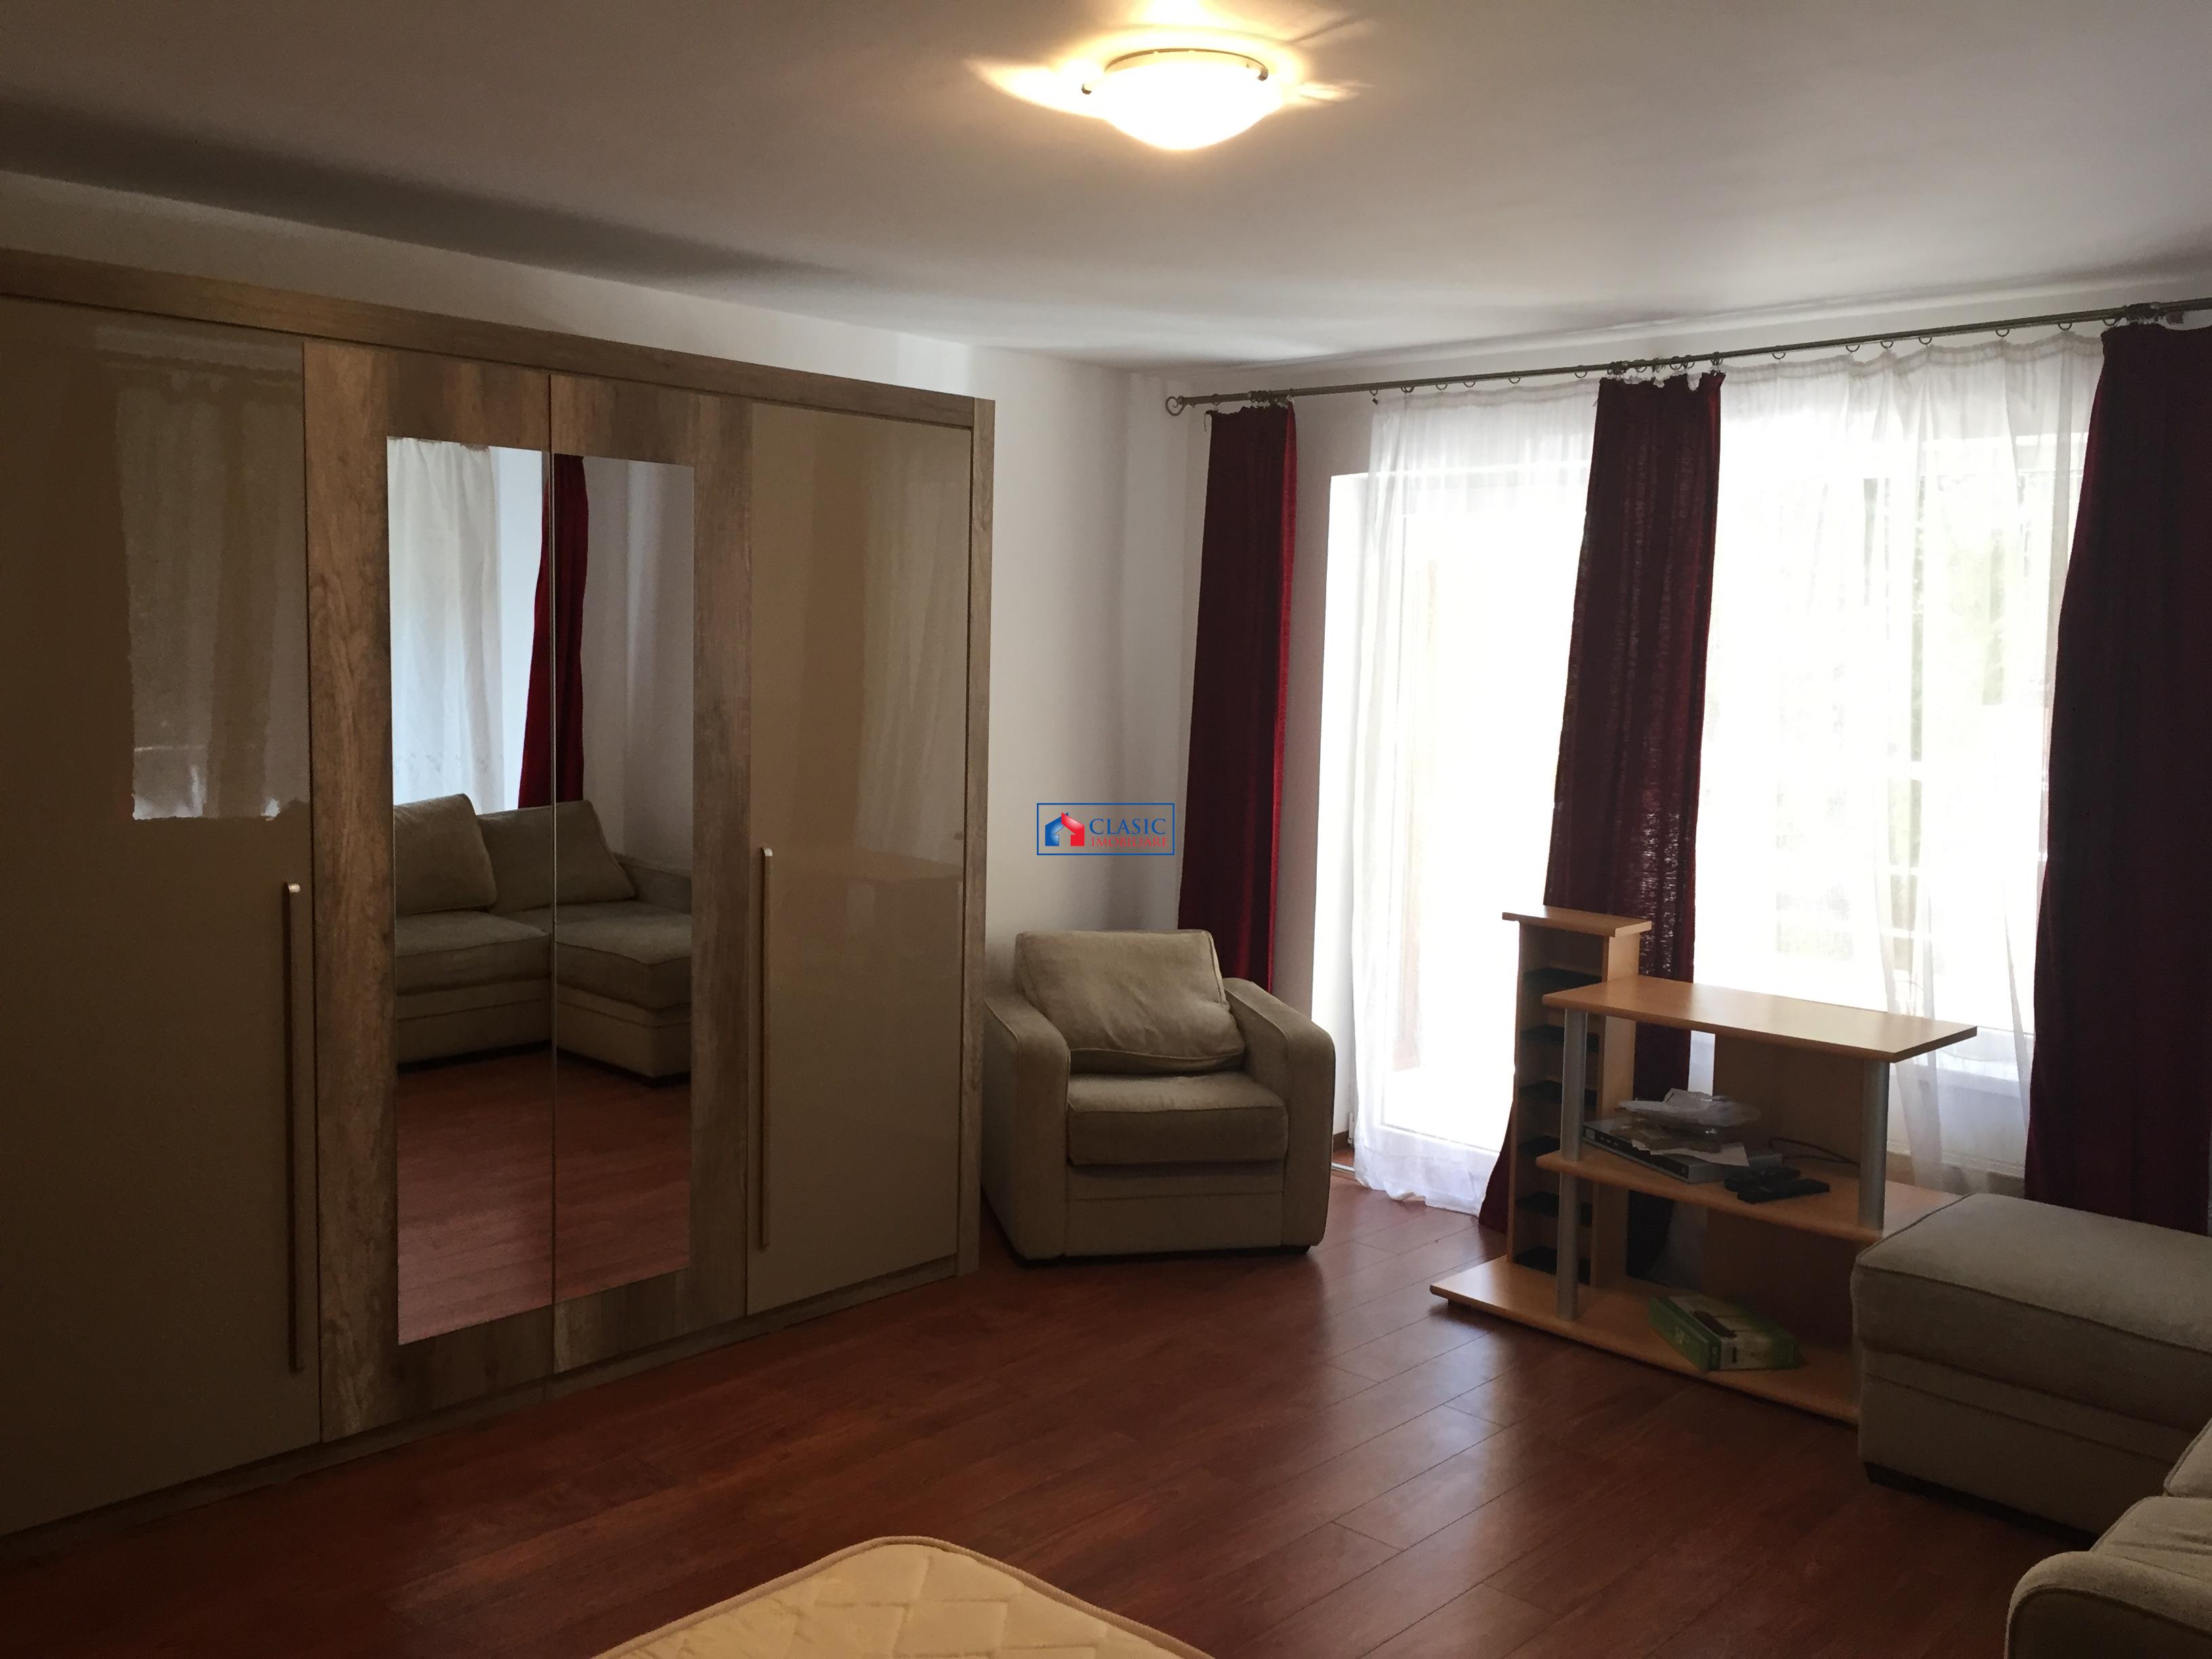 Inchiriere apartament 4 camere bloc nou modern in Zorilor  zona UMF, Cluj Napoca